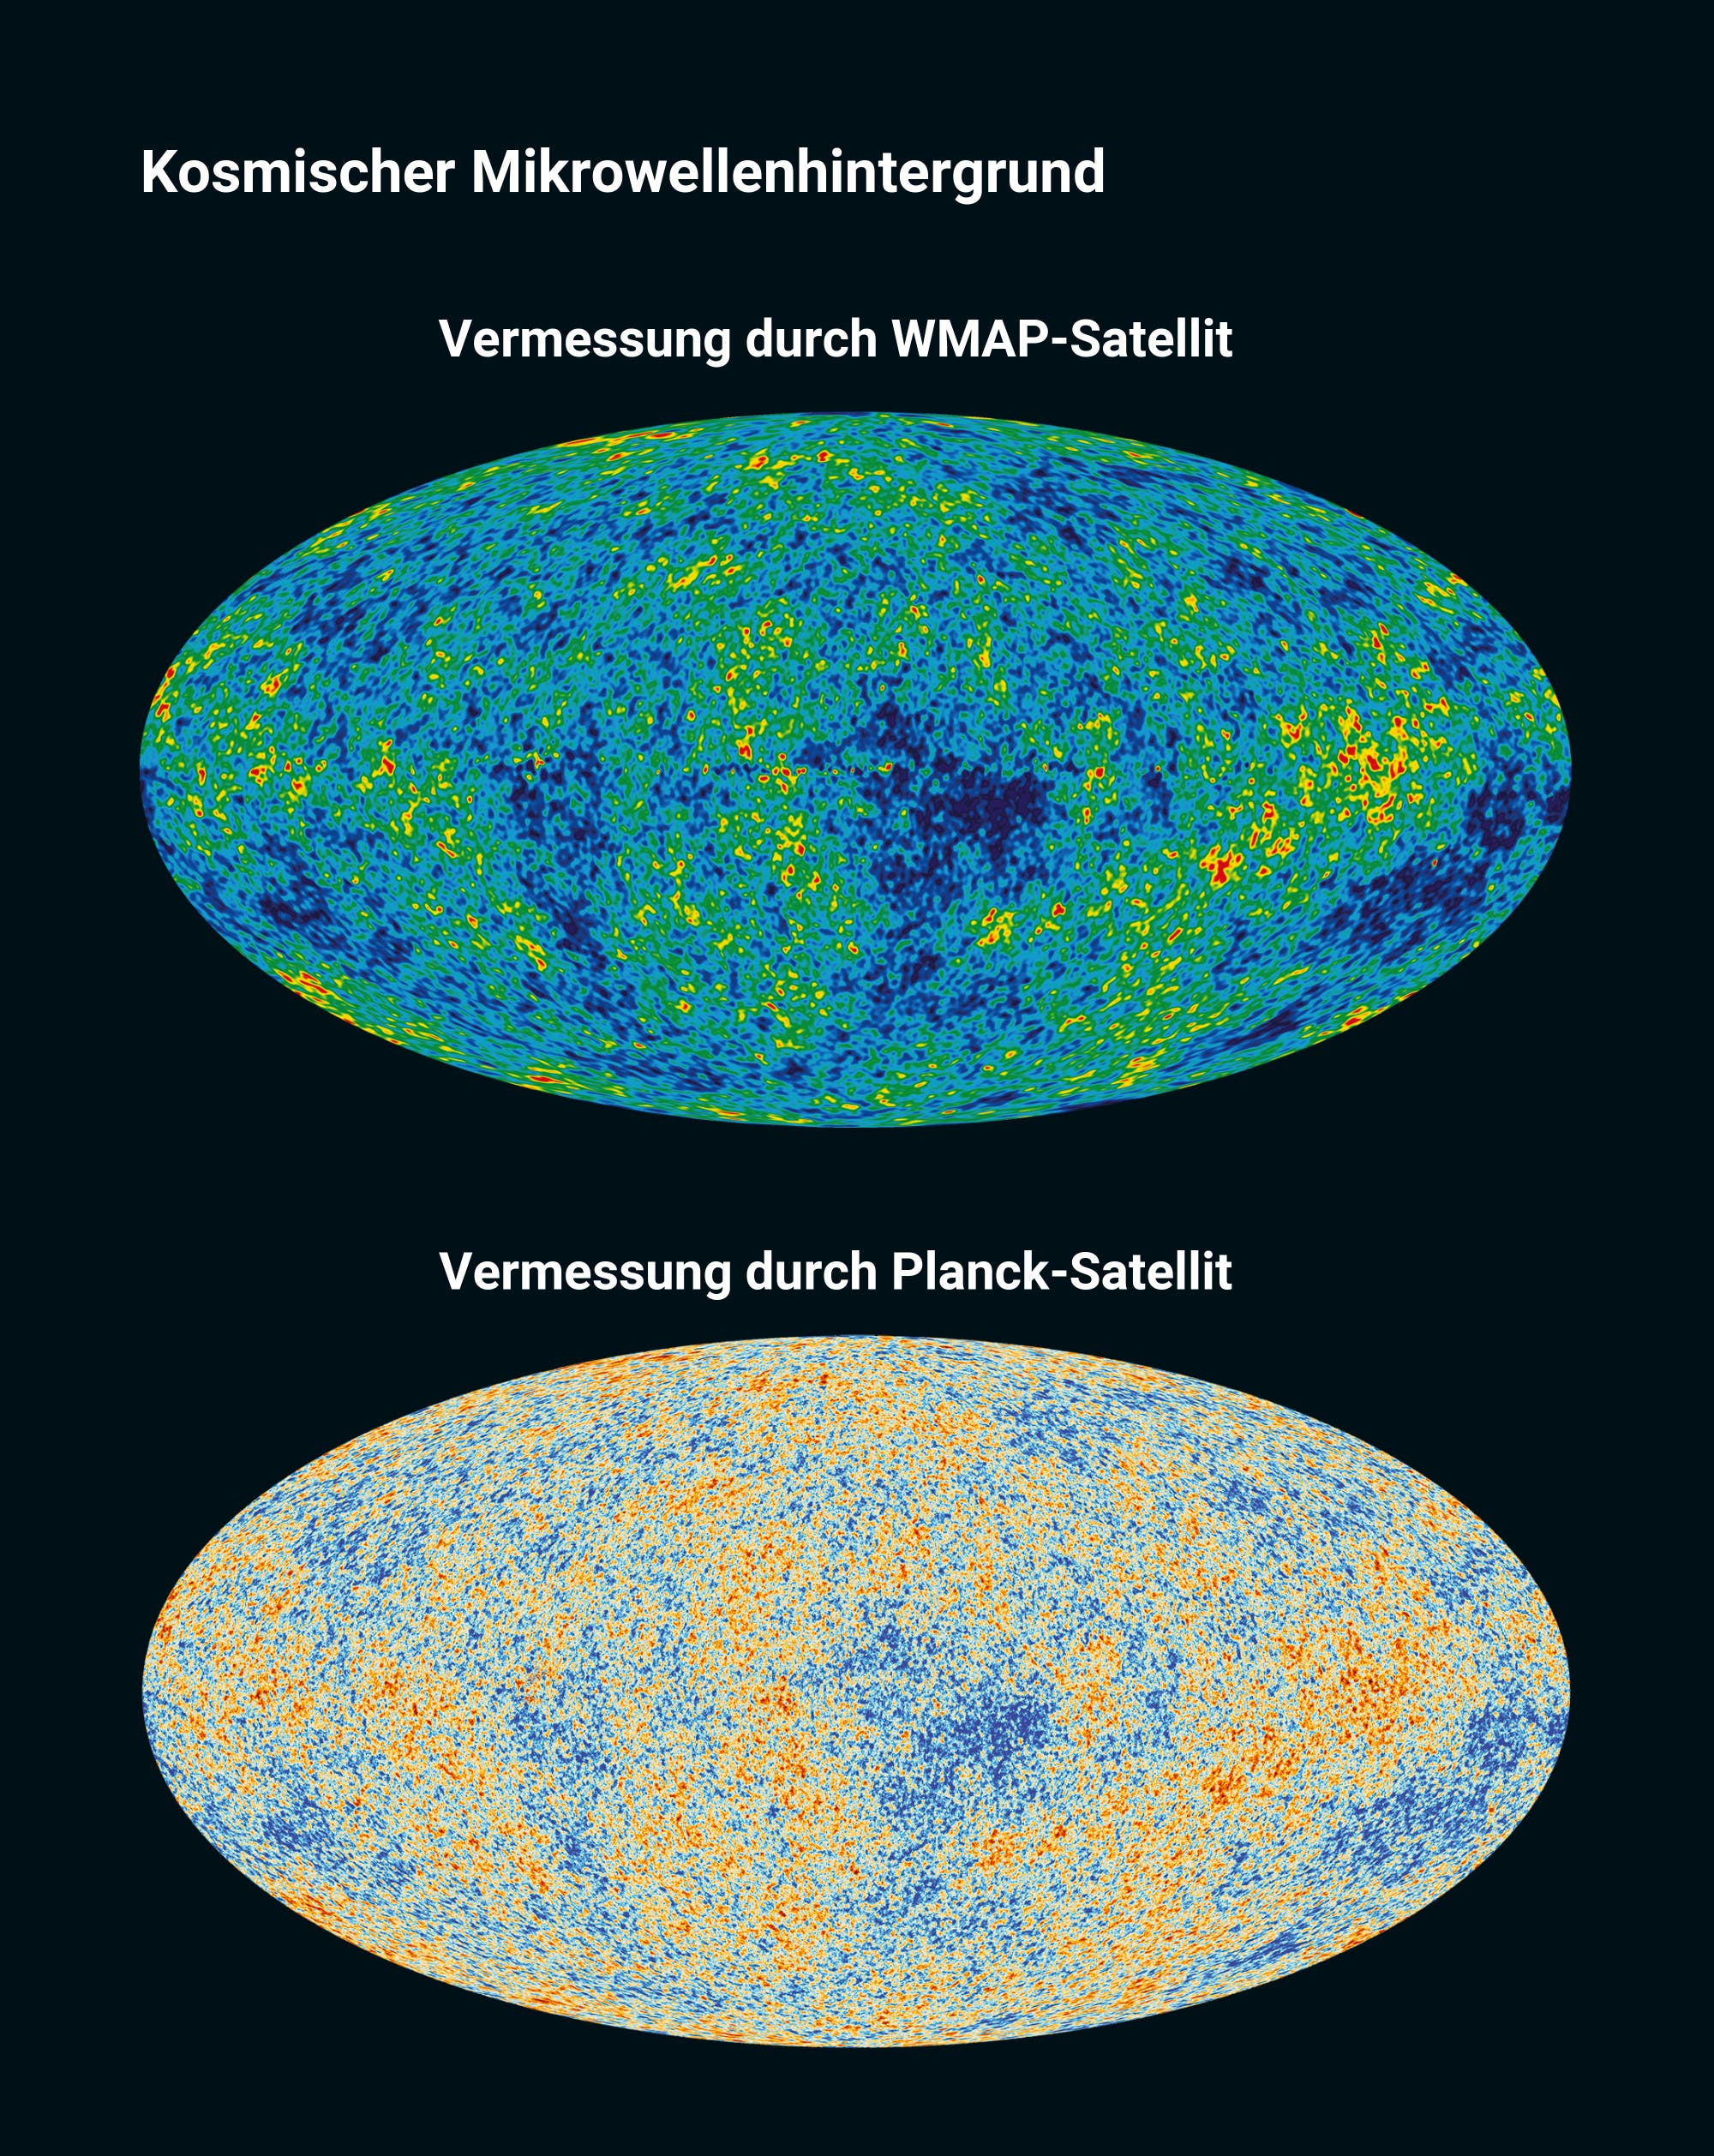 Kosmischer Mikrowellenhintergrund mittels WMAP-Satellit und Planck-Satellit